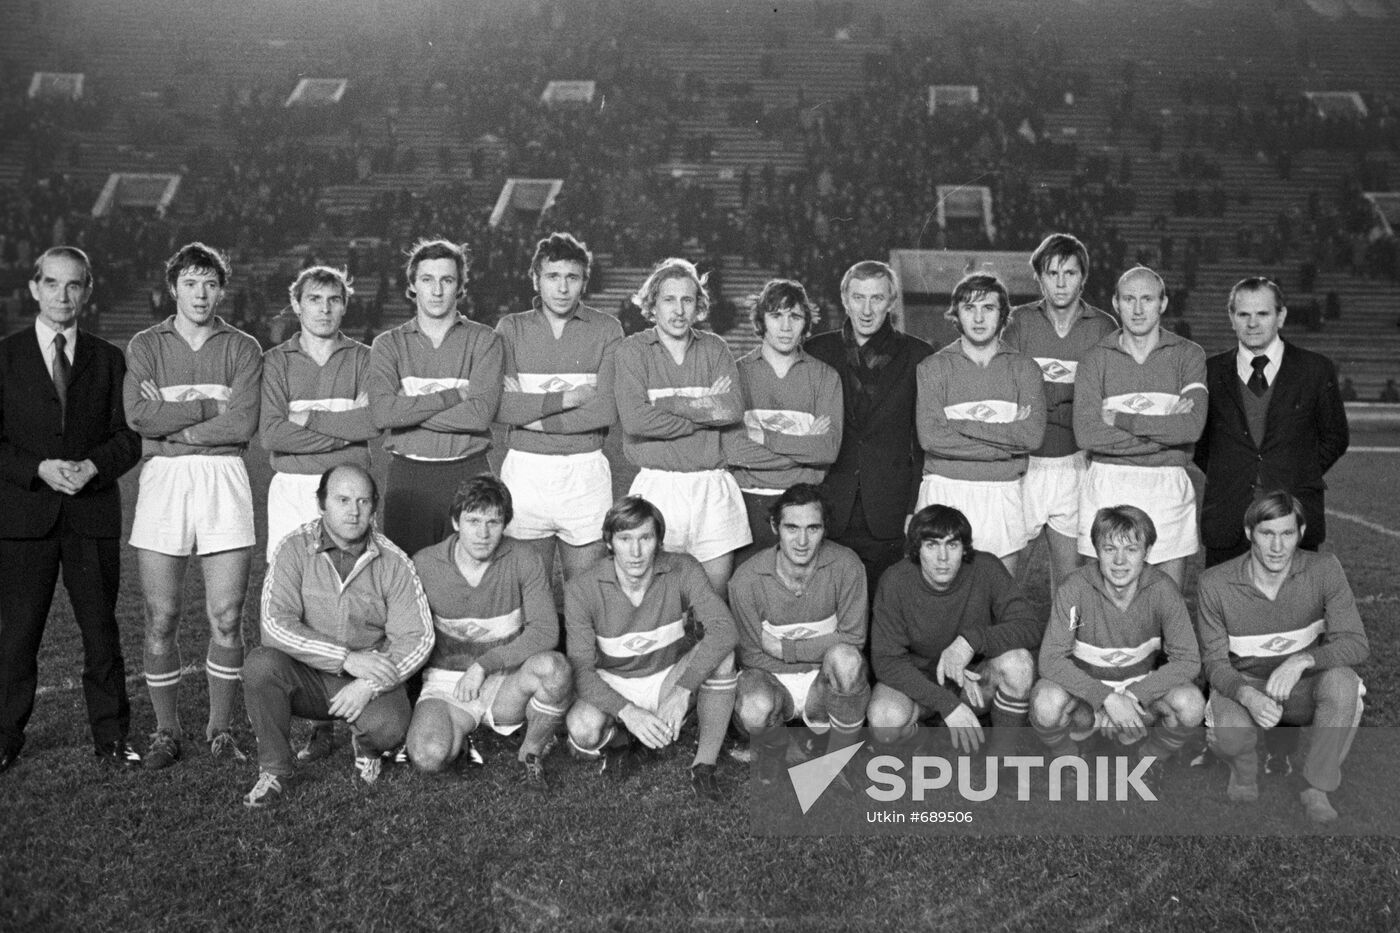 Spartak (Moscow) football club